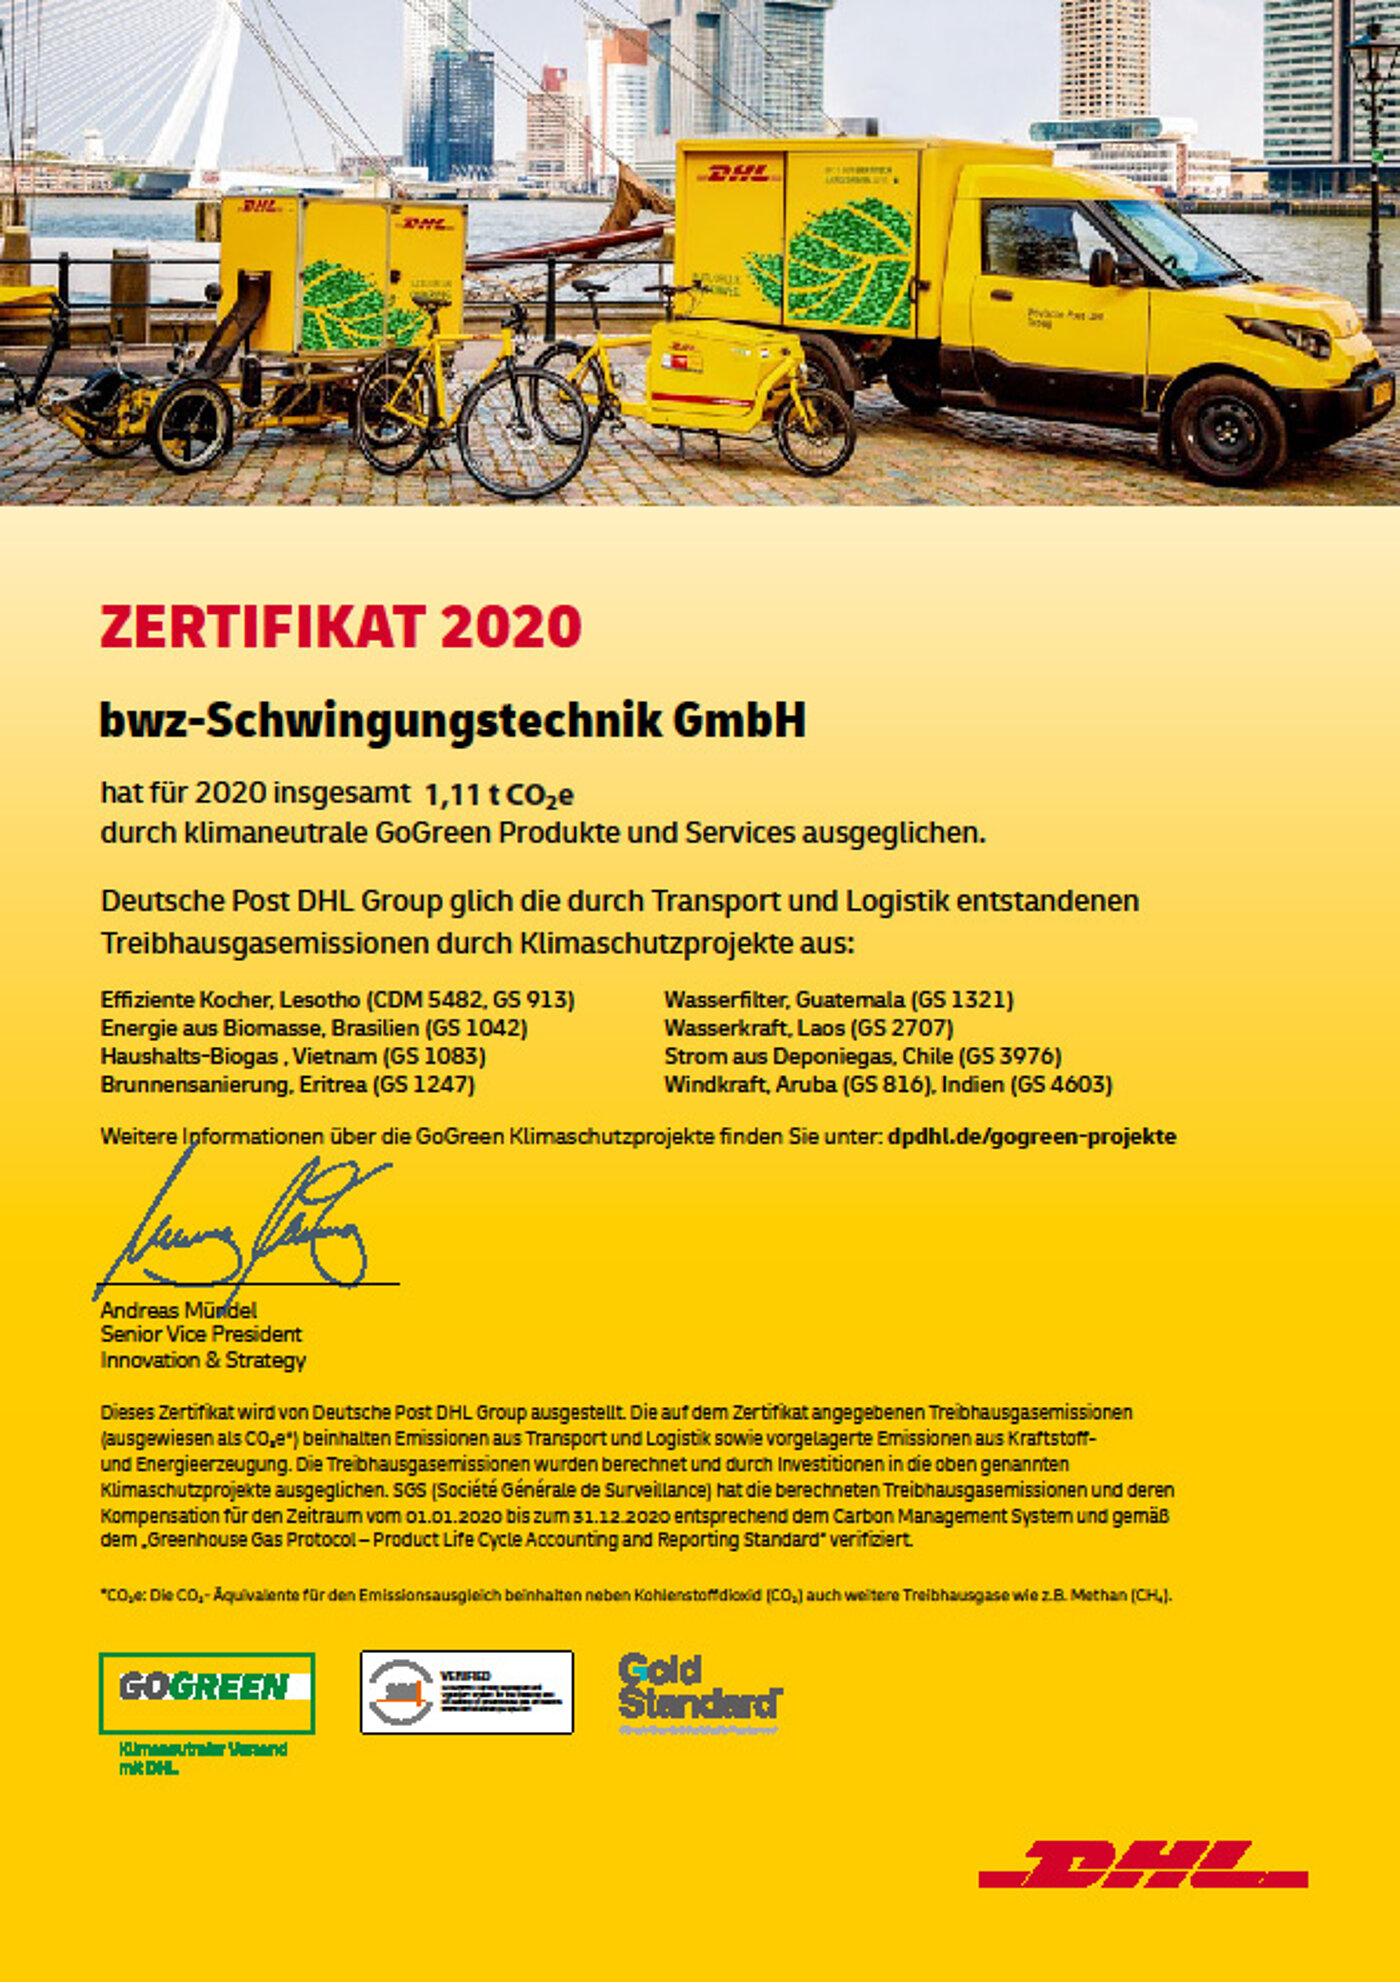 bwz Schwingungstechnik 1,11t CO²e-Einsparung 2020 durch DHL GOGREEN